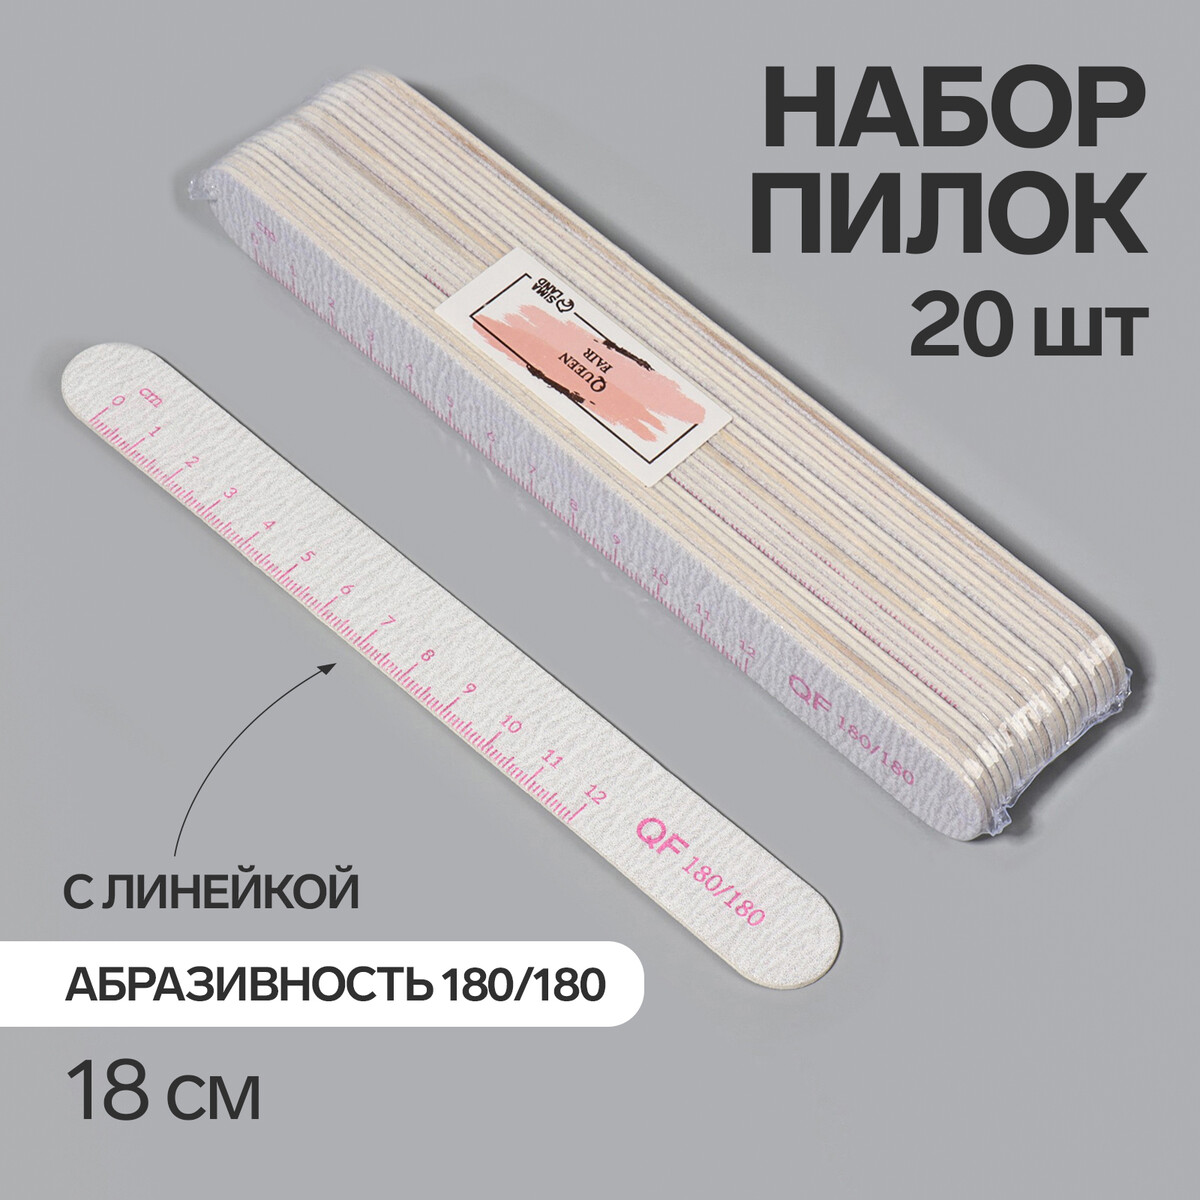 Пилка-наждак, набор 20 шт, абразивность 180, 18 см, цвет серый/розовый пилка наждак абразивность 180 200 18 см серый